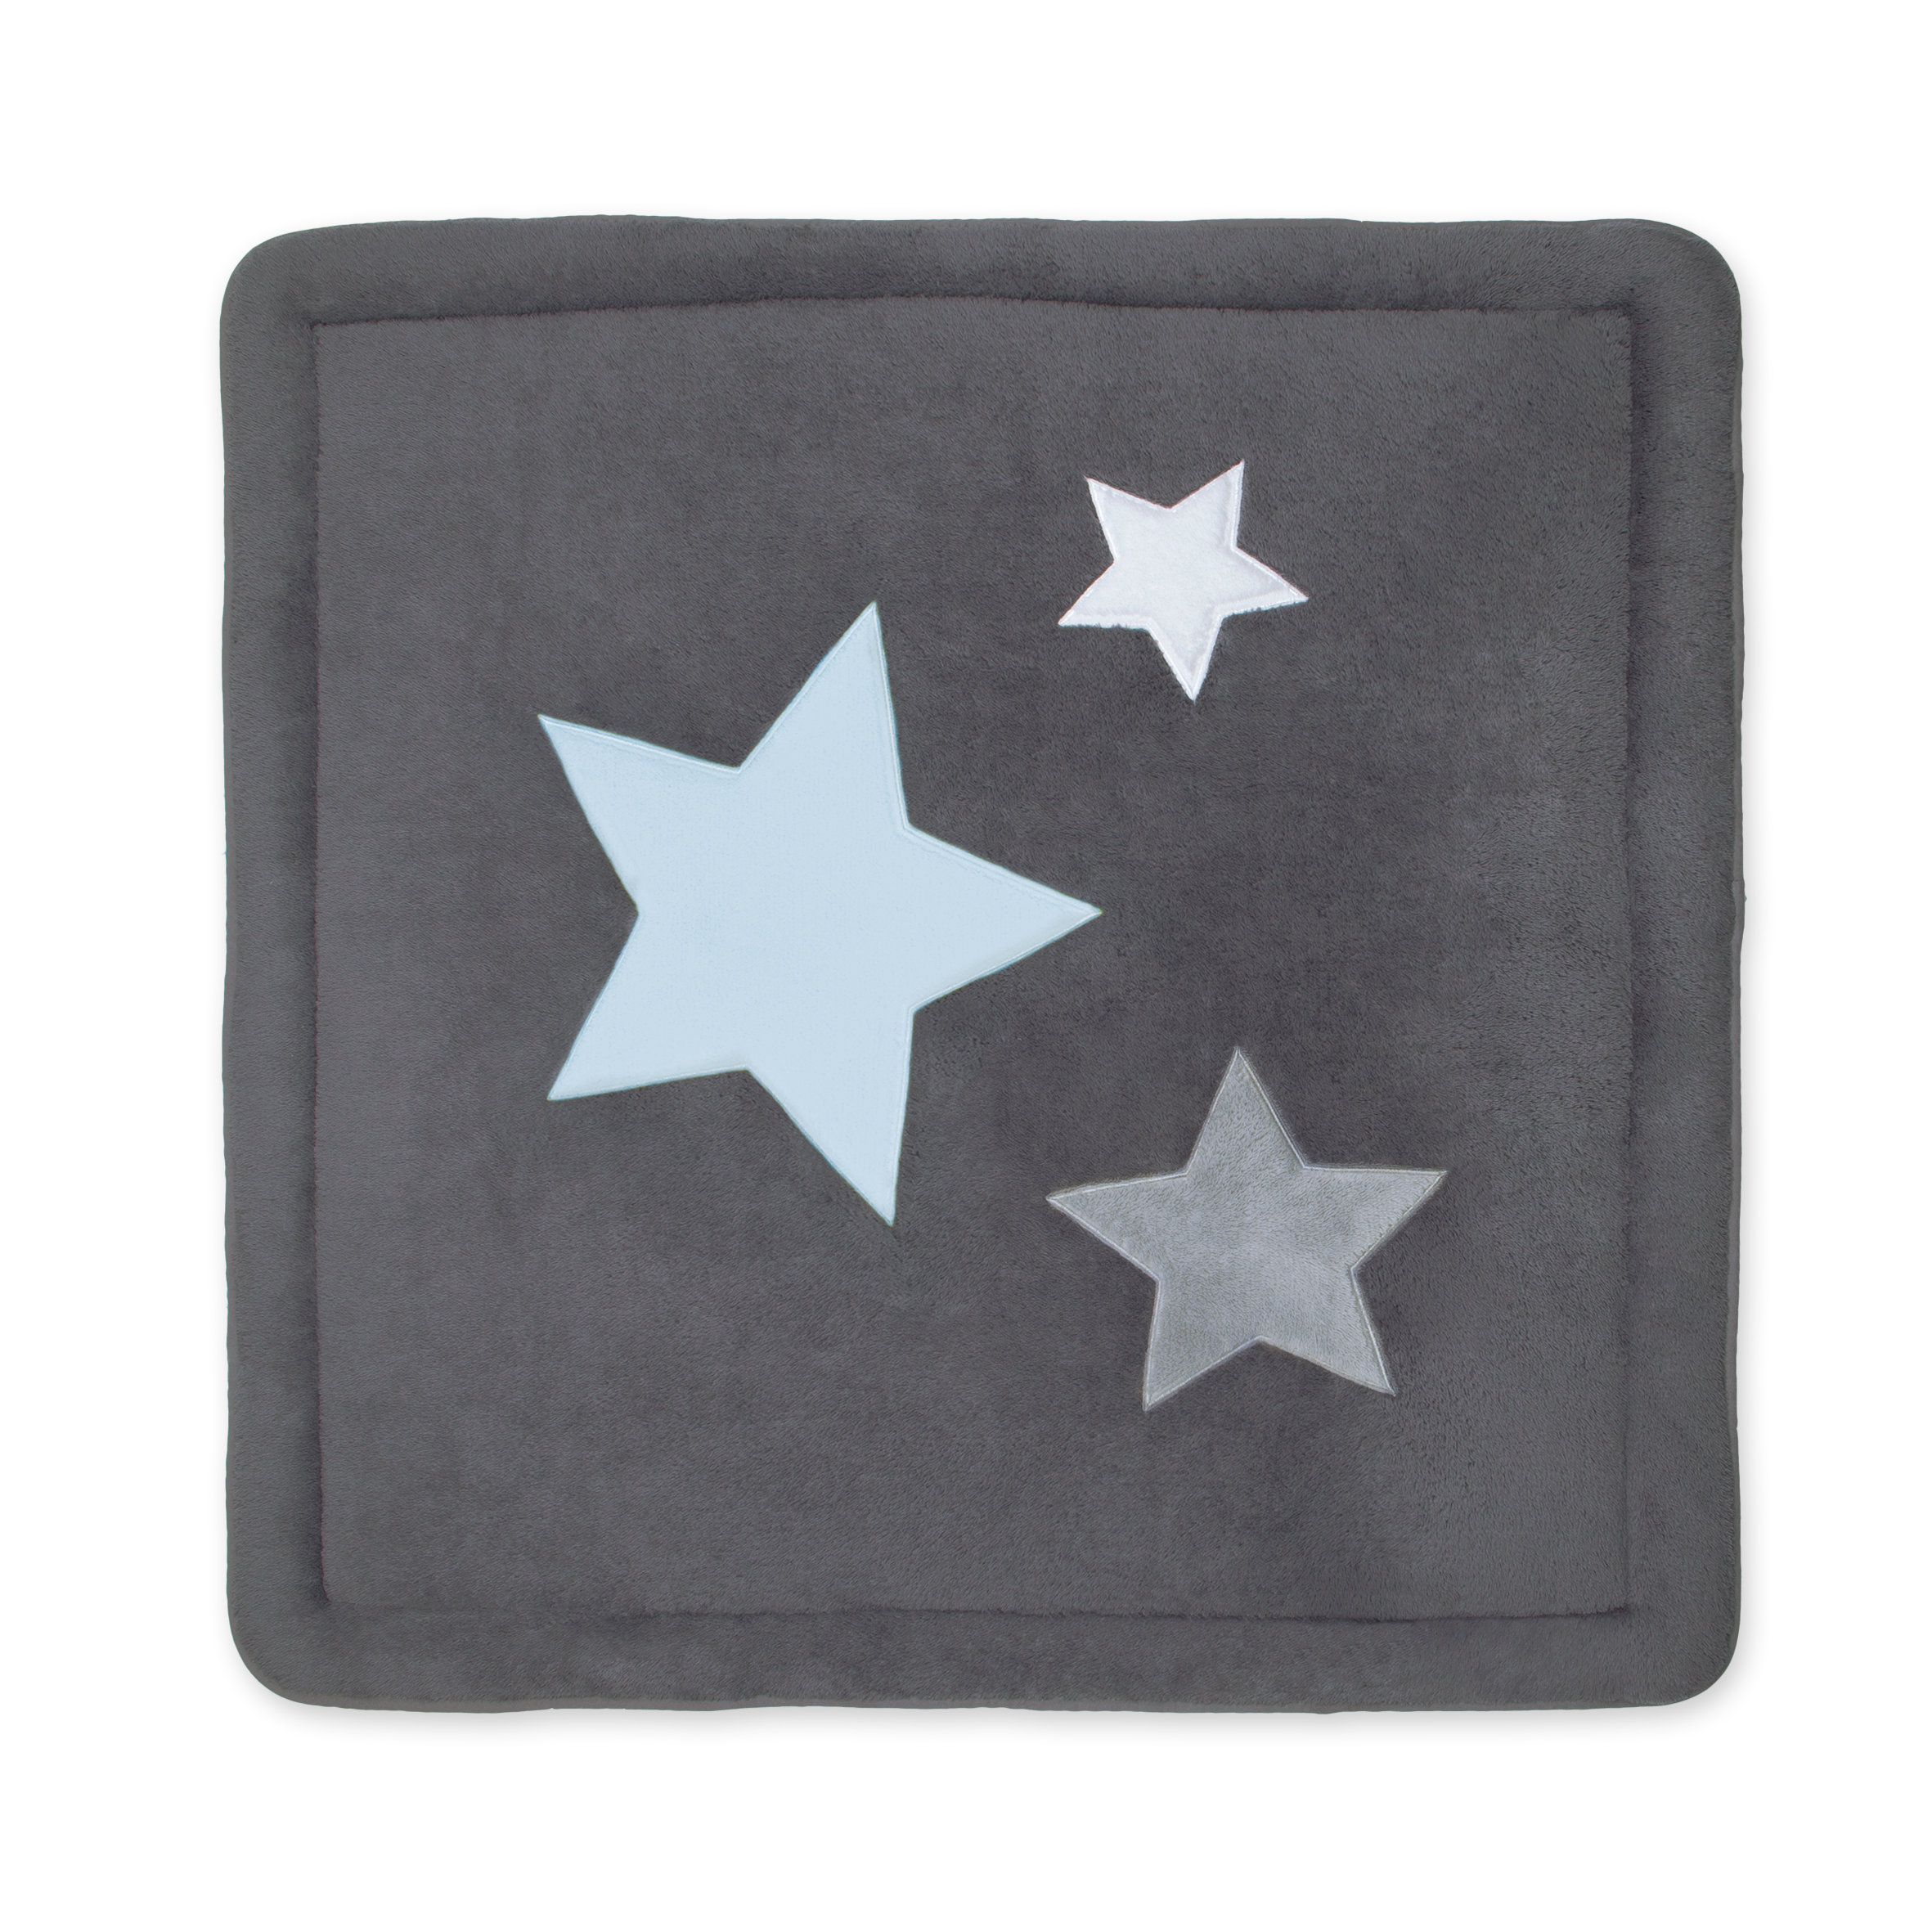 Laufstalleinlage Krabbeldecke Pady softy + terry 100x100cm STARB Pingu kleine Sterne